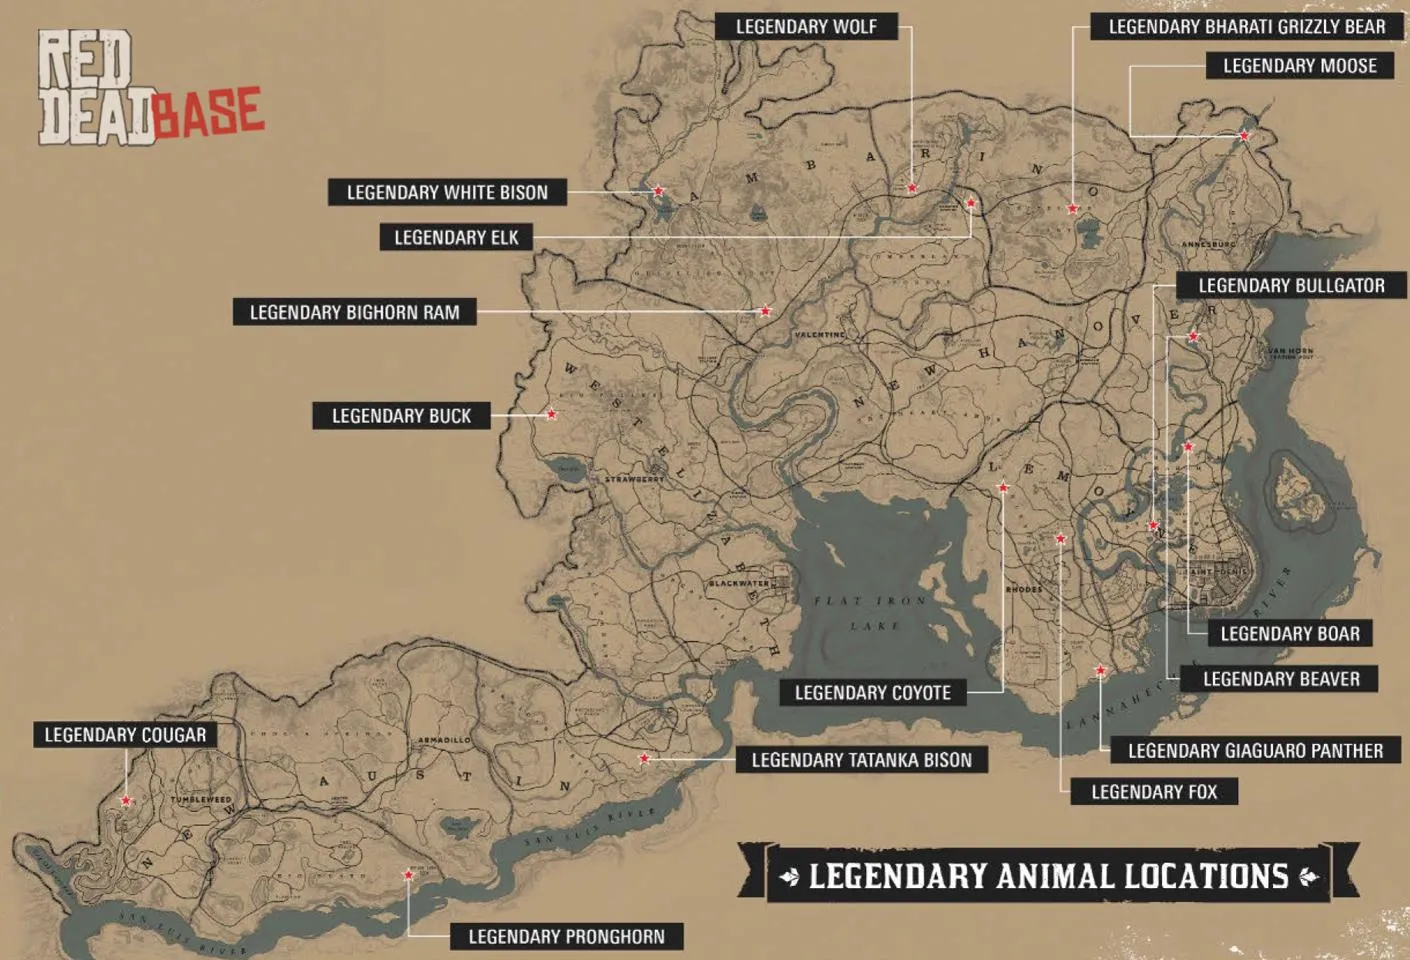 Legendary Boar - Map Location in RDR2